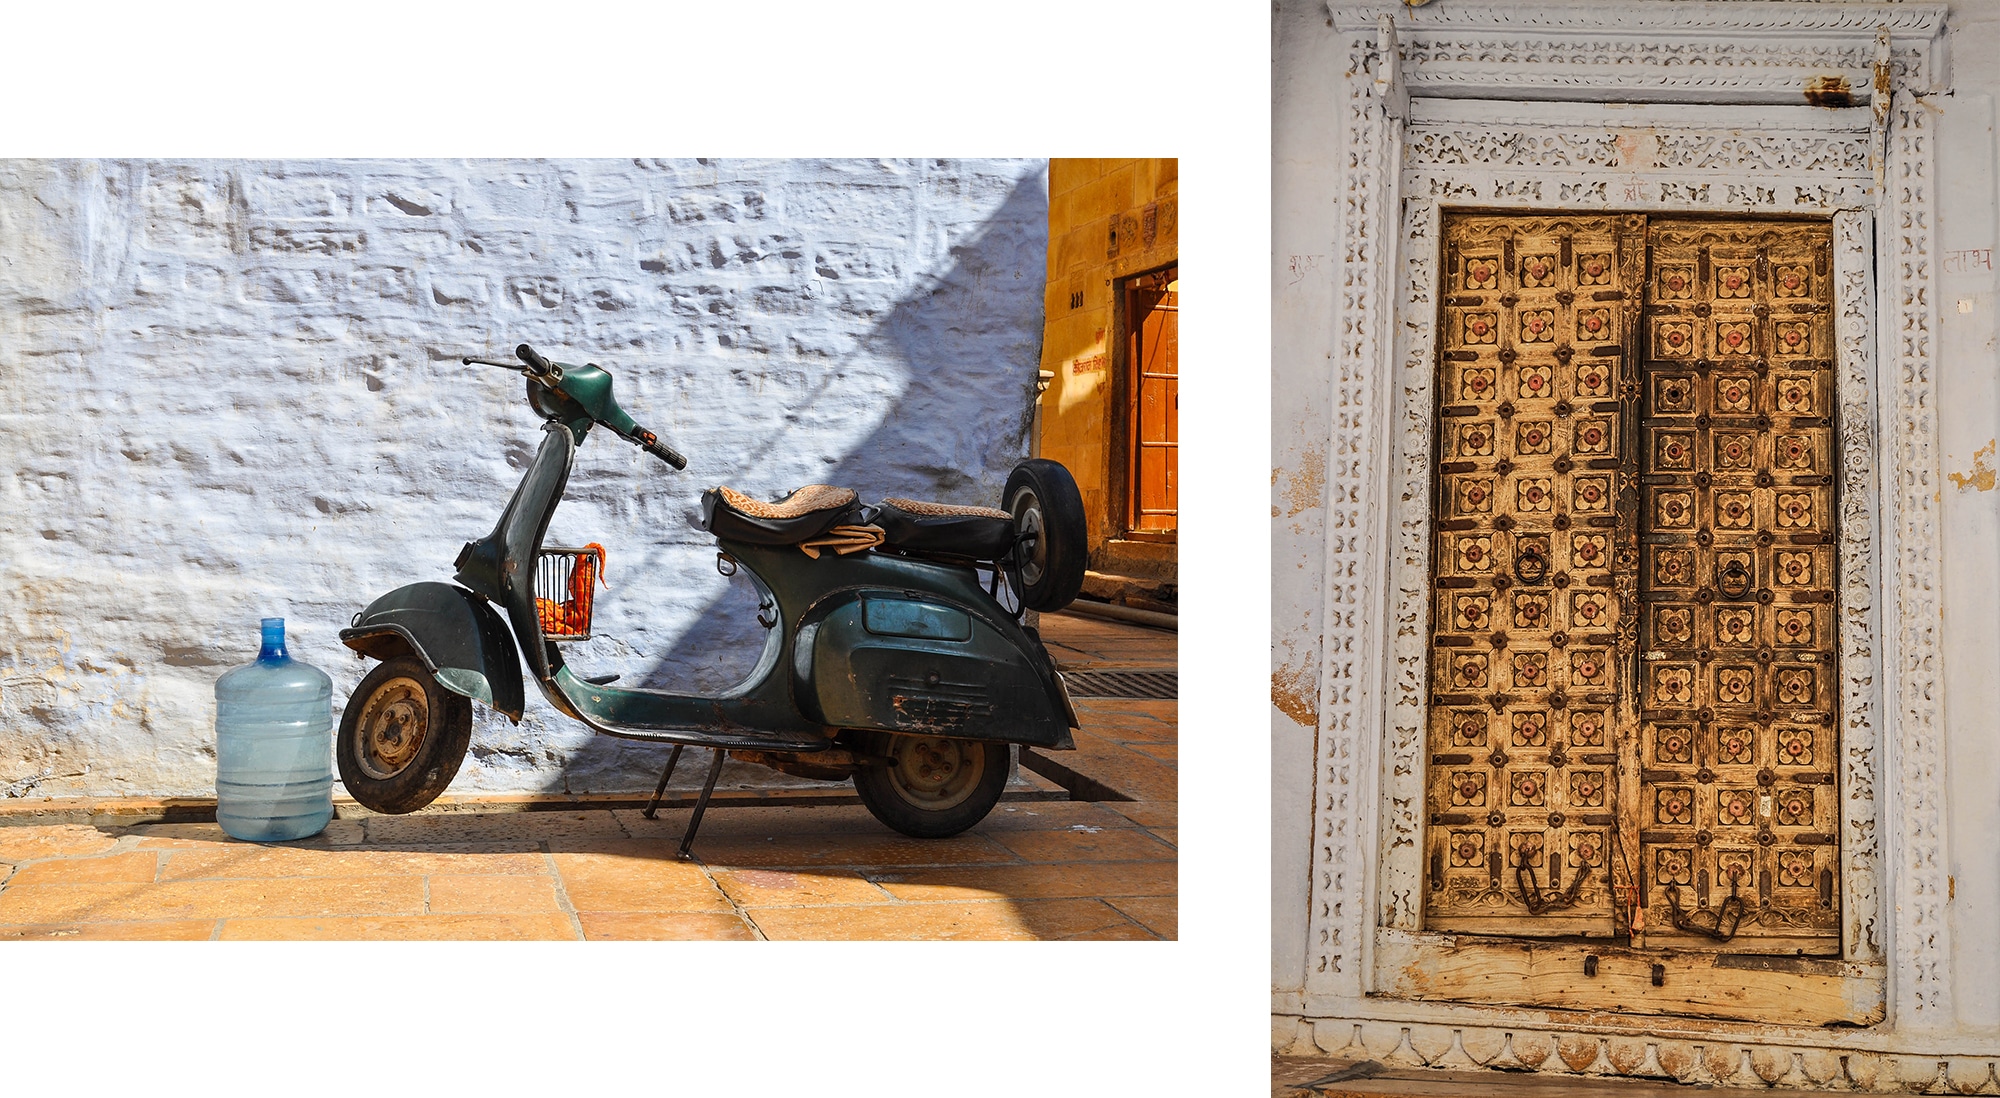 Porte dans le fort de Jaisalmer en Inde